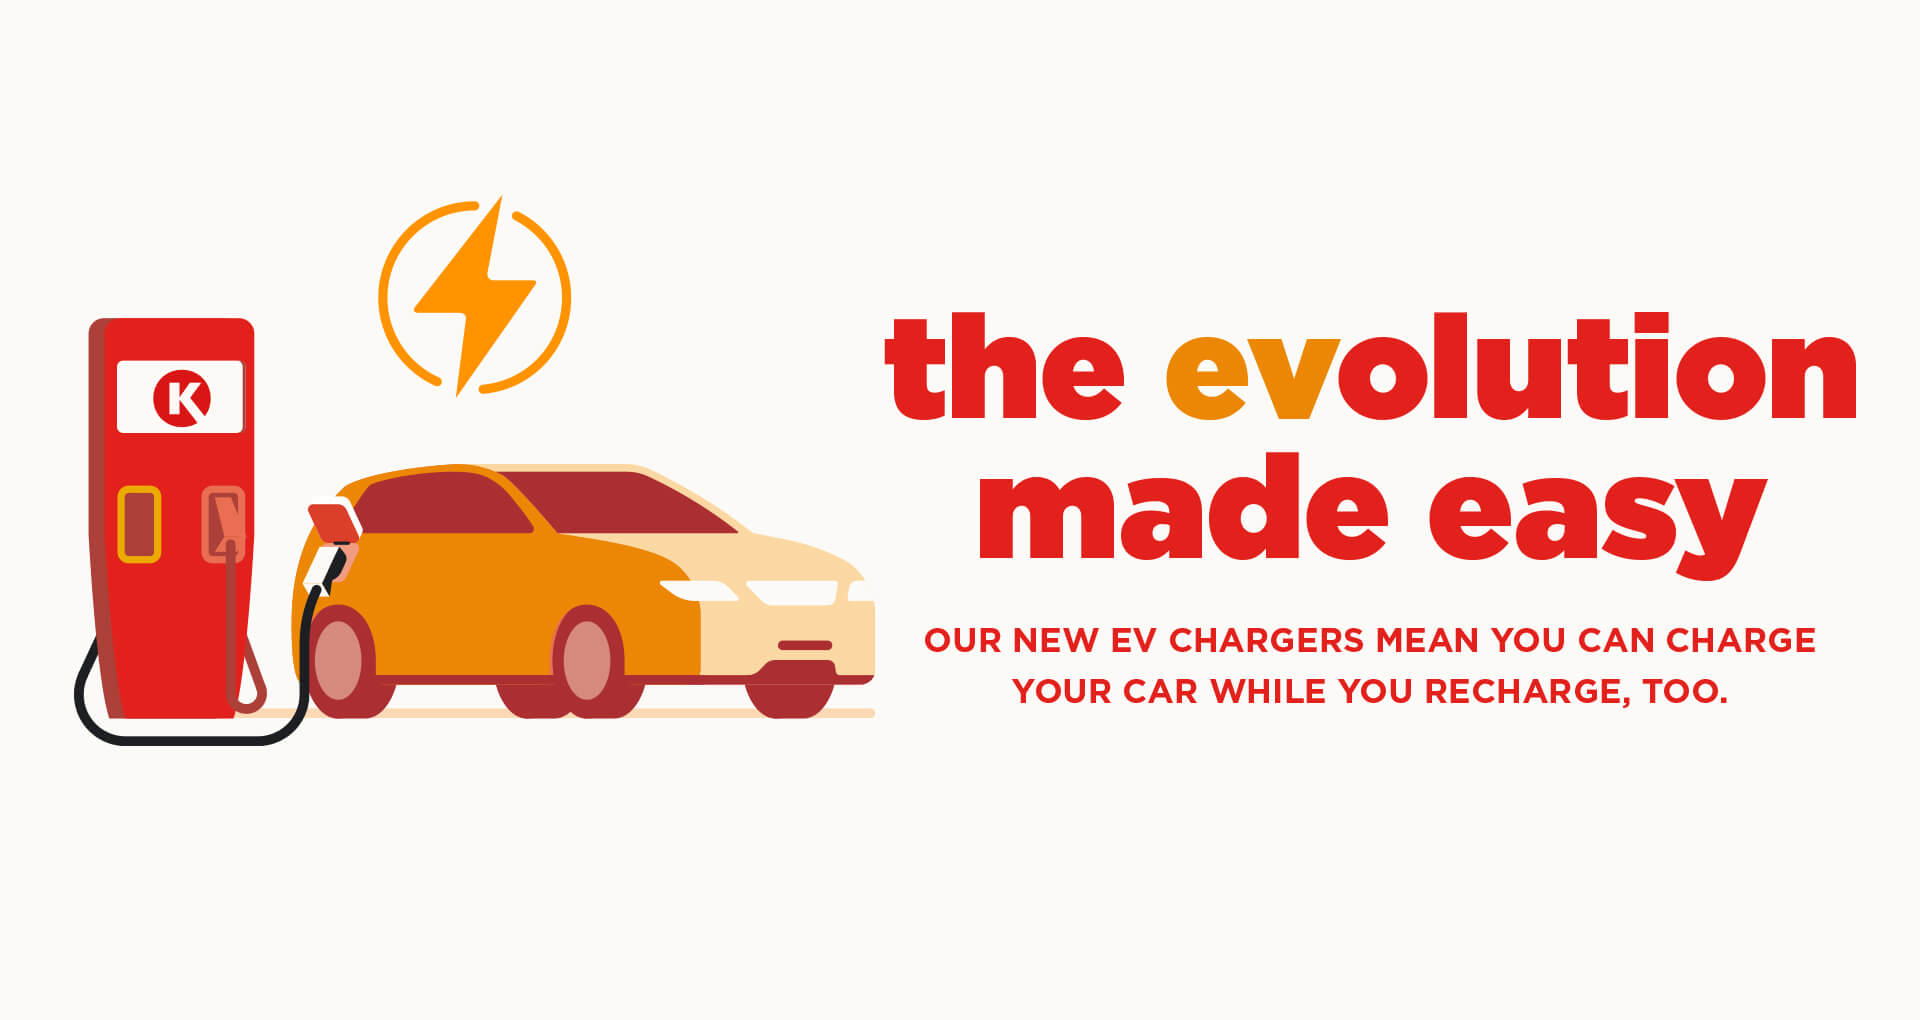 Circle K EV Charging: Evolution made easy 